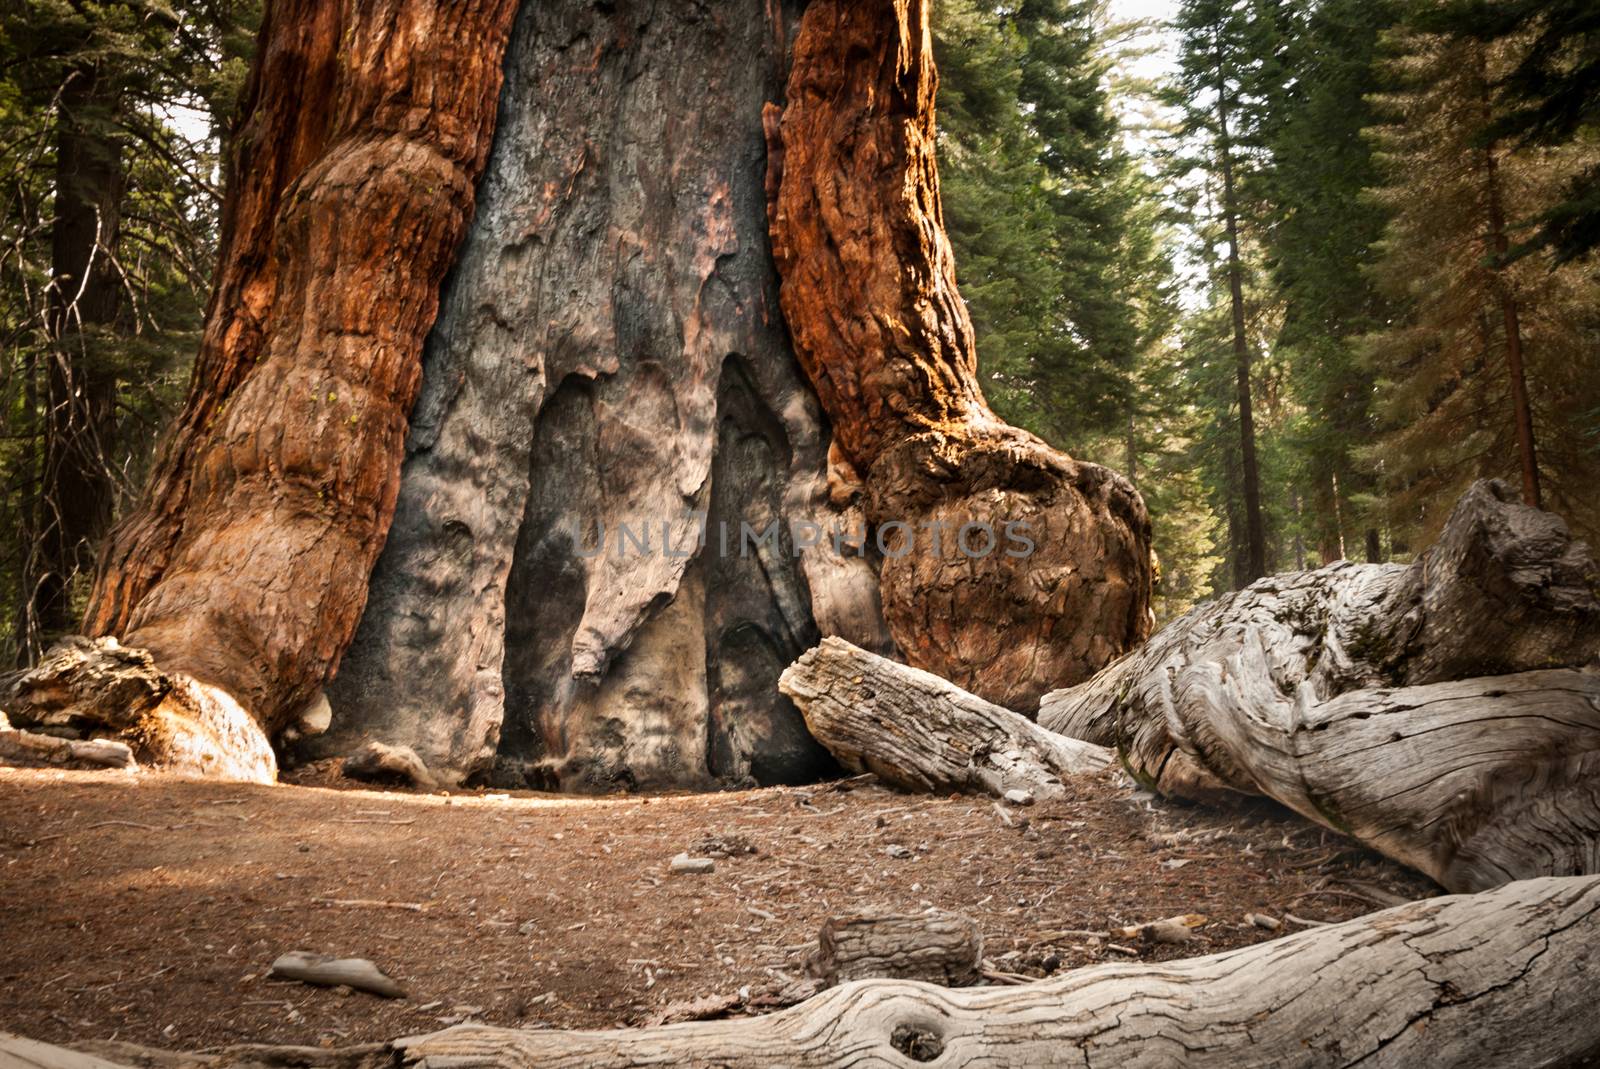 Yosemite big tree by weltreisendertj